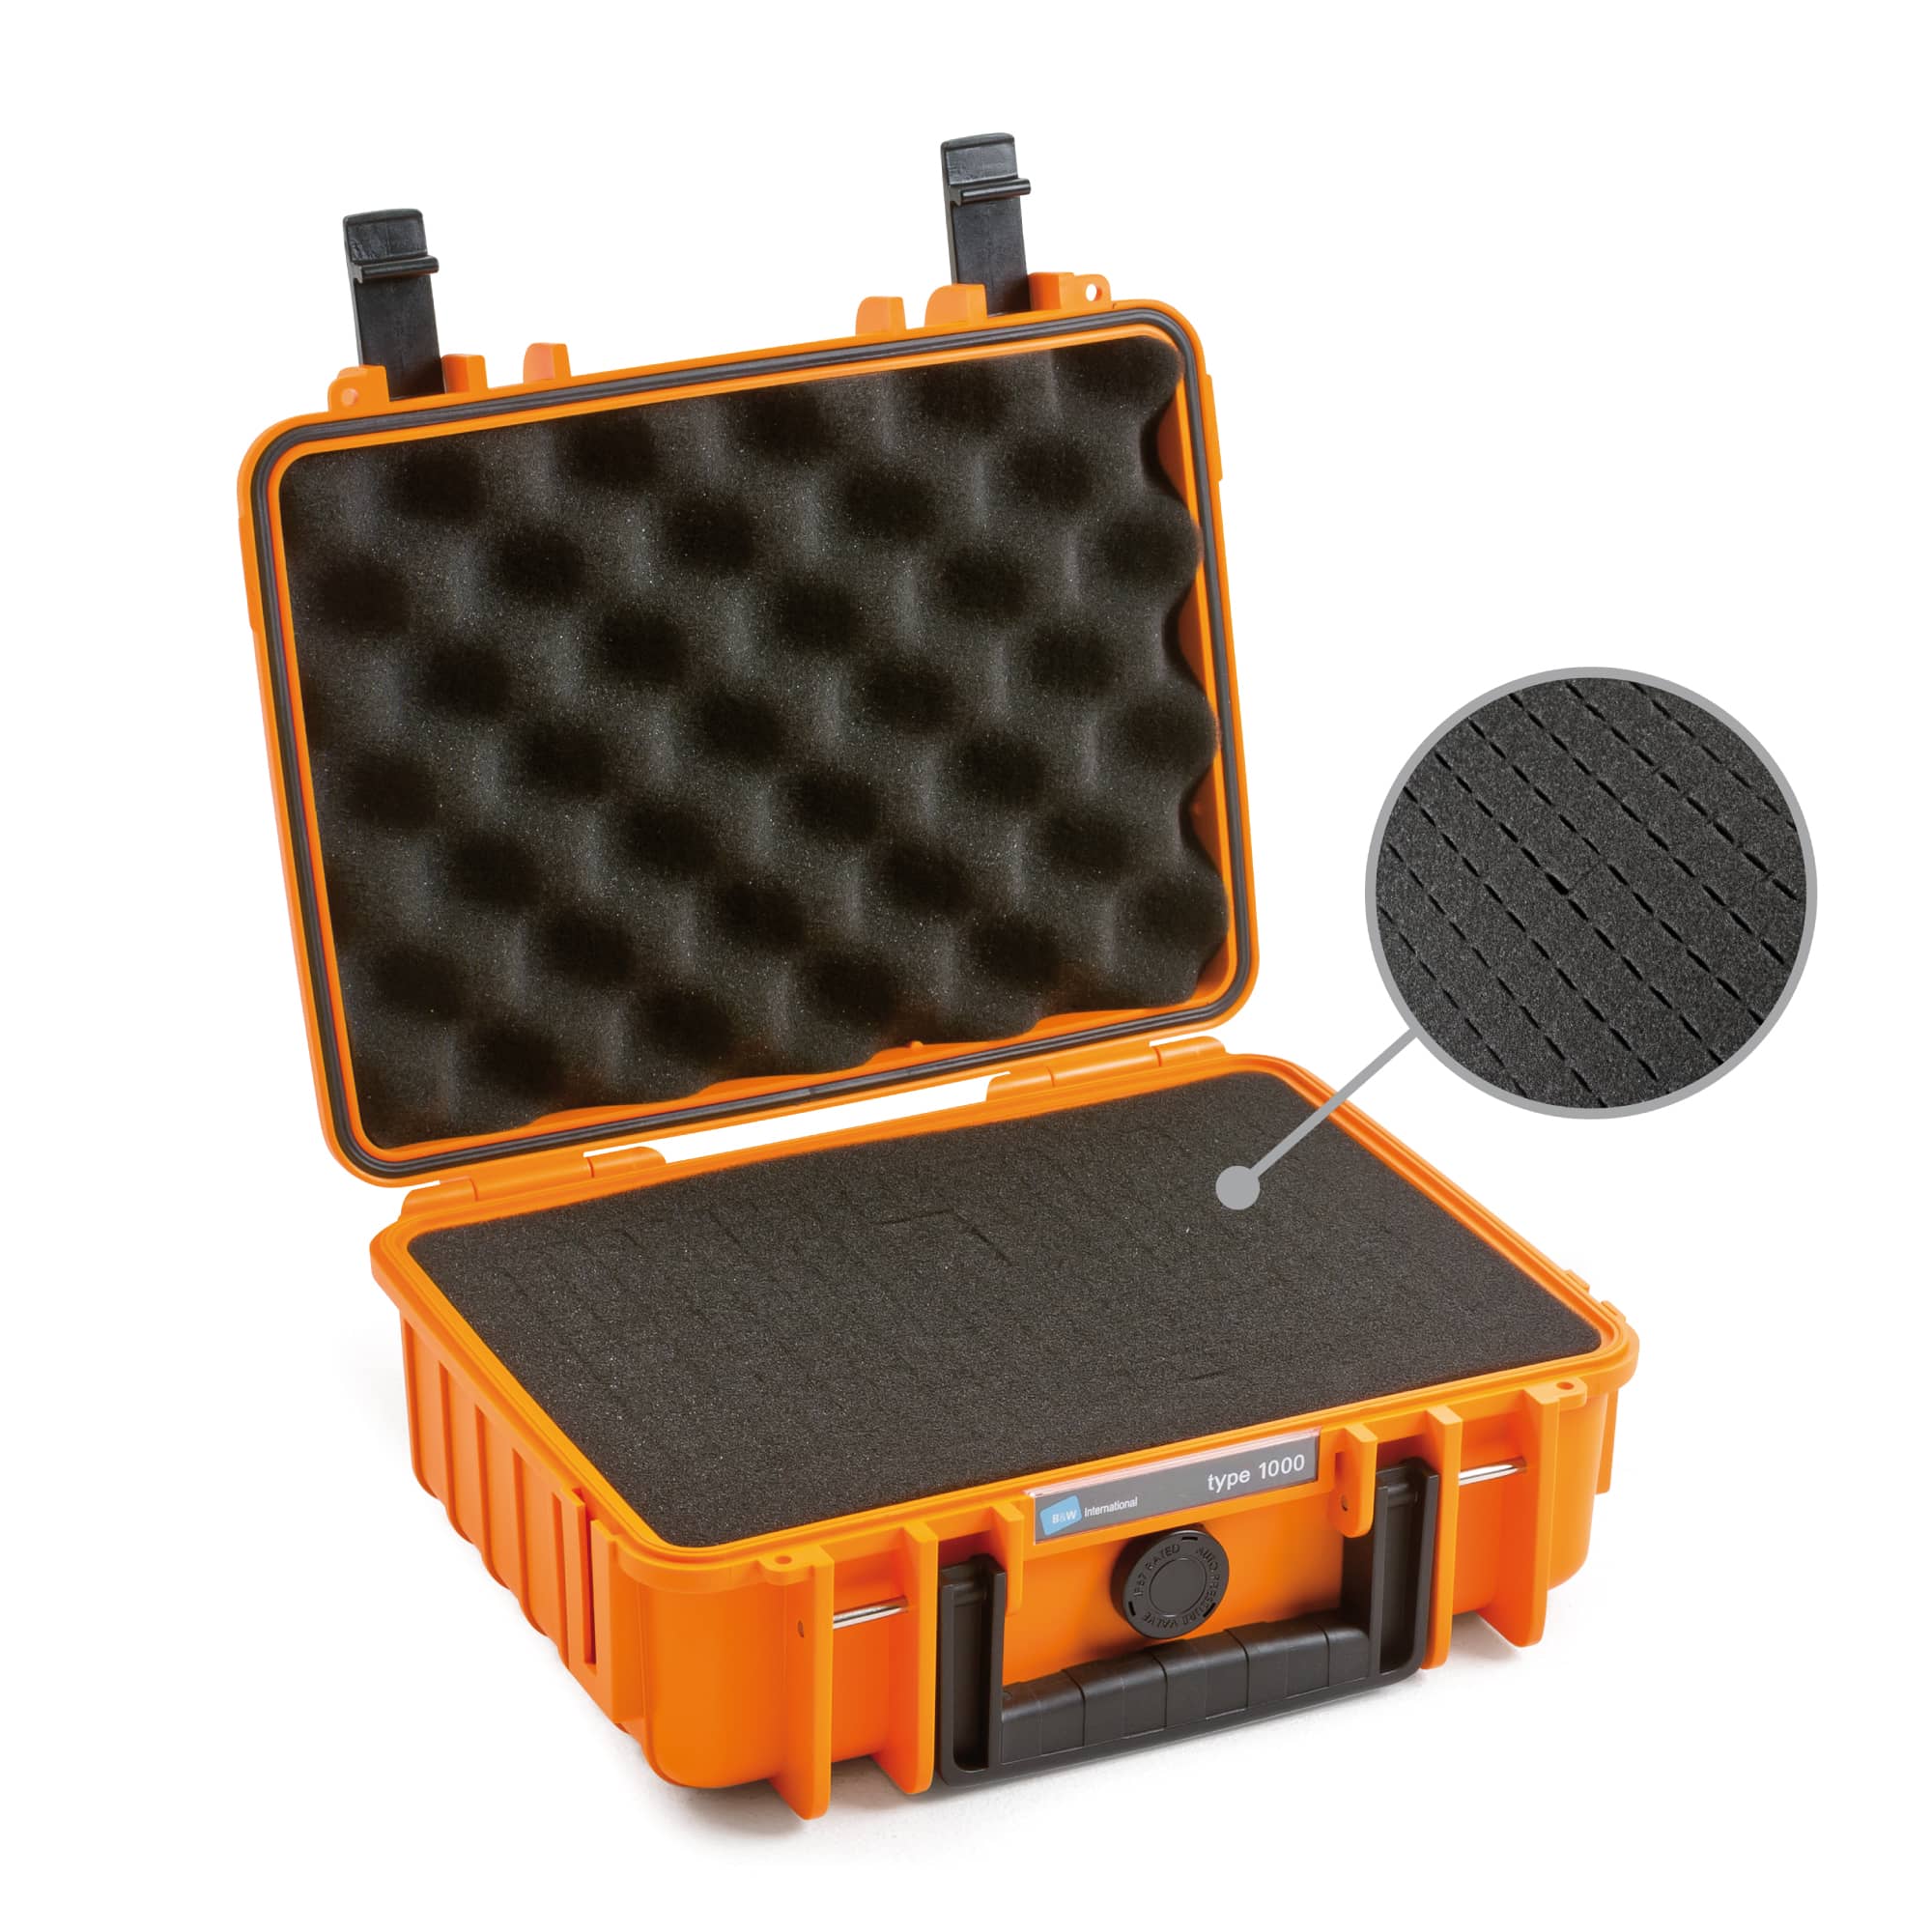 B&W Outdoor Case Typ 1000 orange mit Würfelschaum (SI) Farbe: orange / Innenausstattung: Würfelschaum (SI)